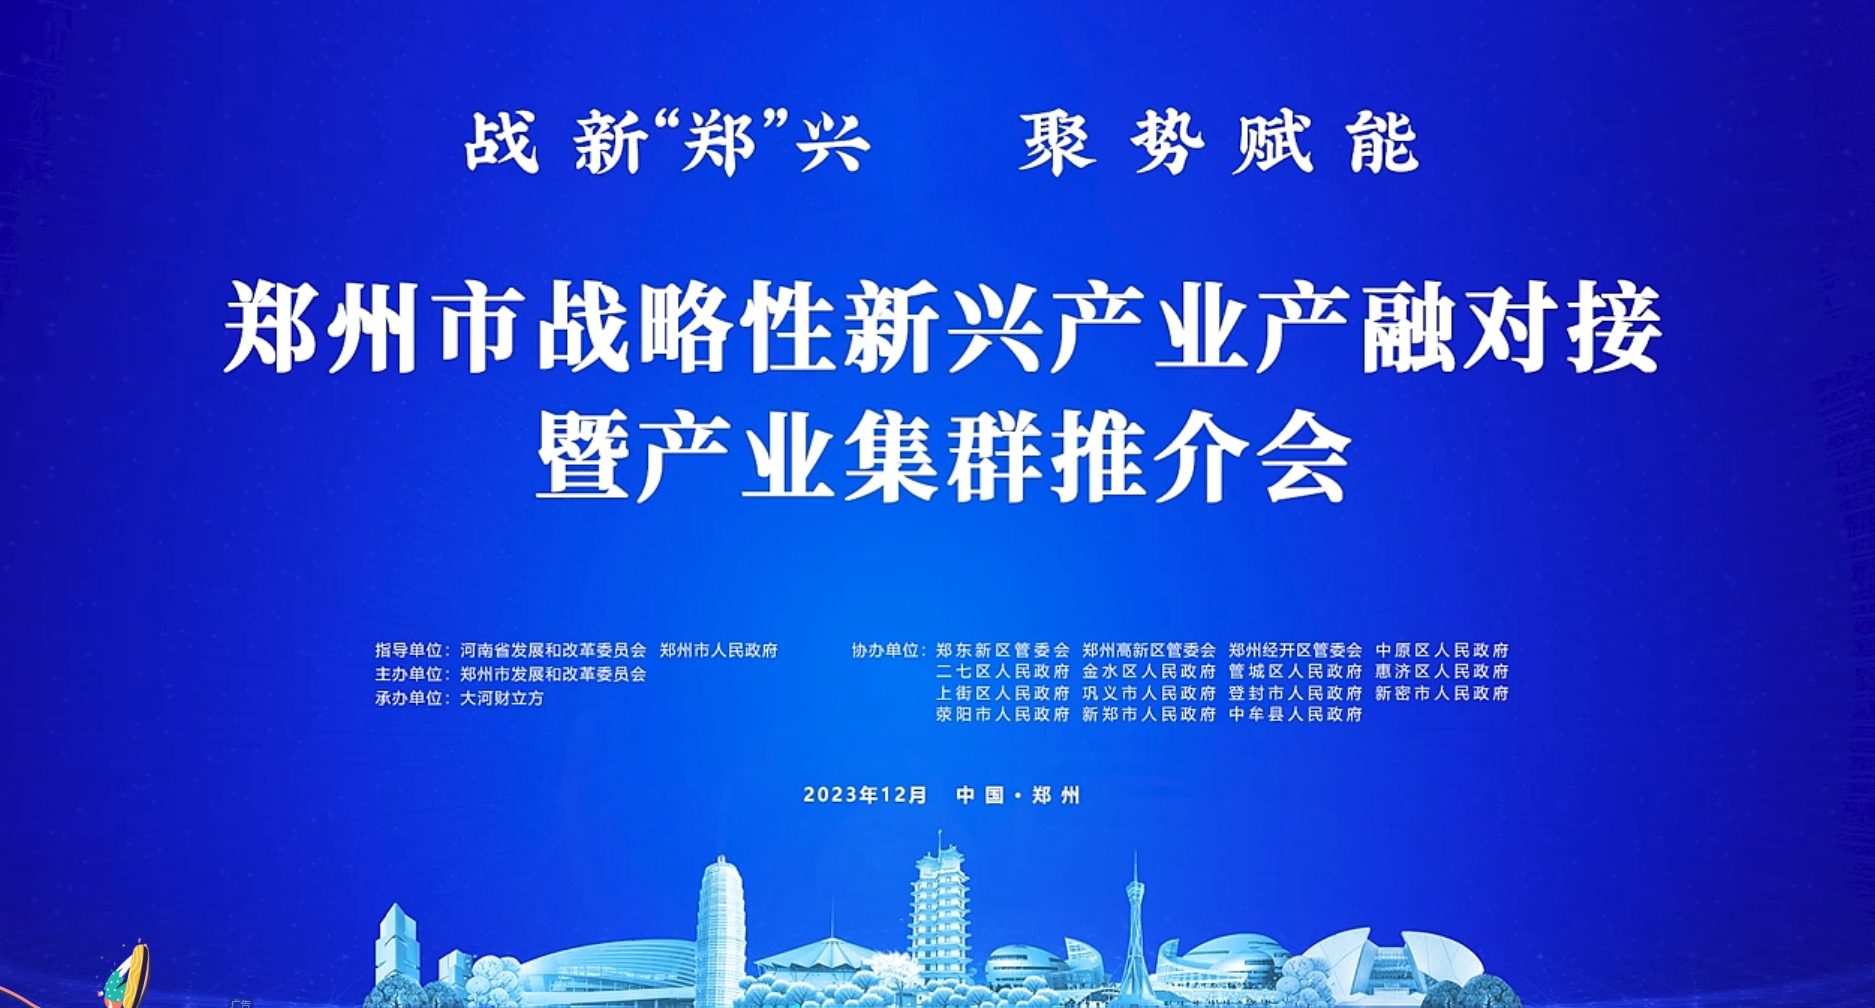 森源鸿马亮相参加郑州高端装备产业发展经验交流会(图1)